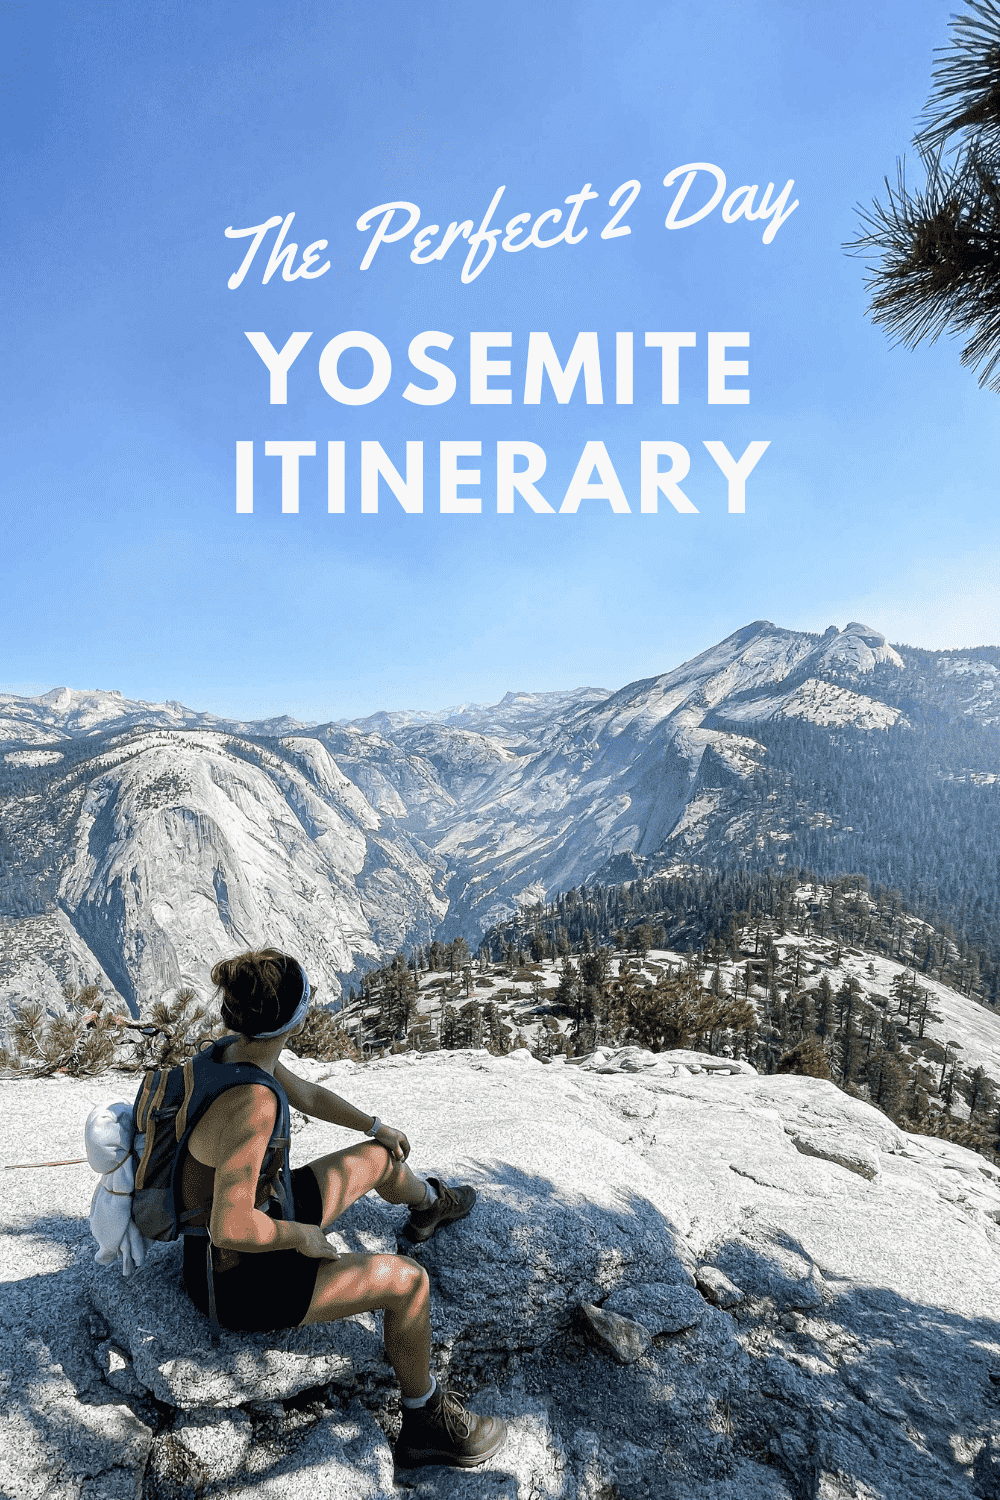 The Perfect 2 Day Yosemite Itinerary